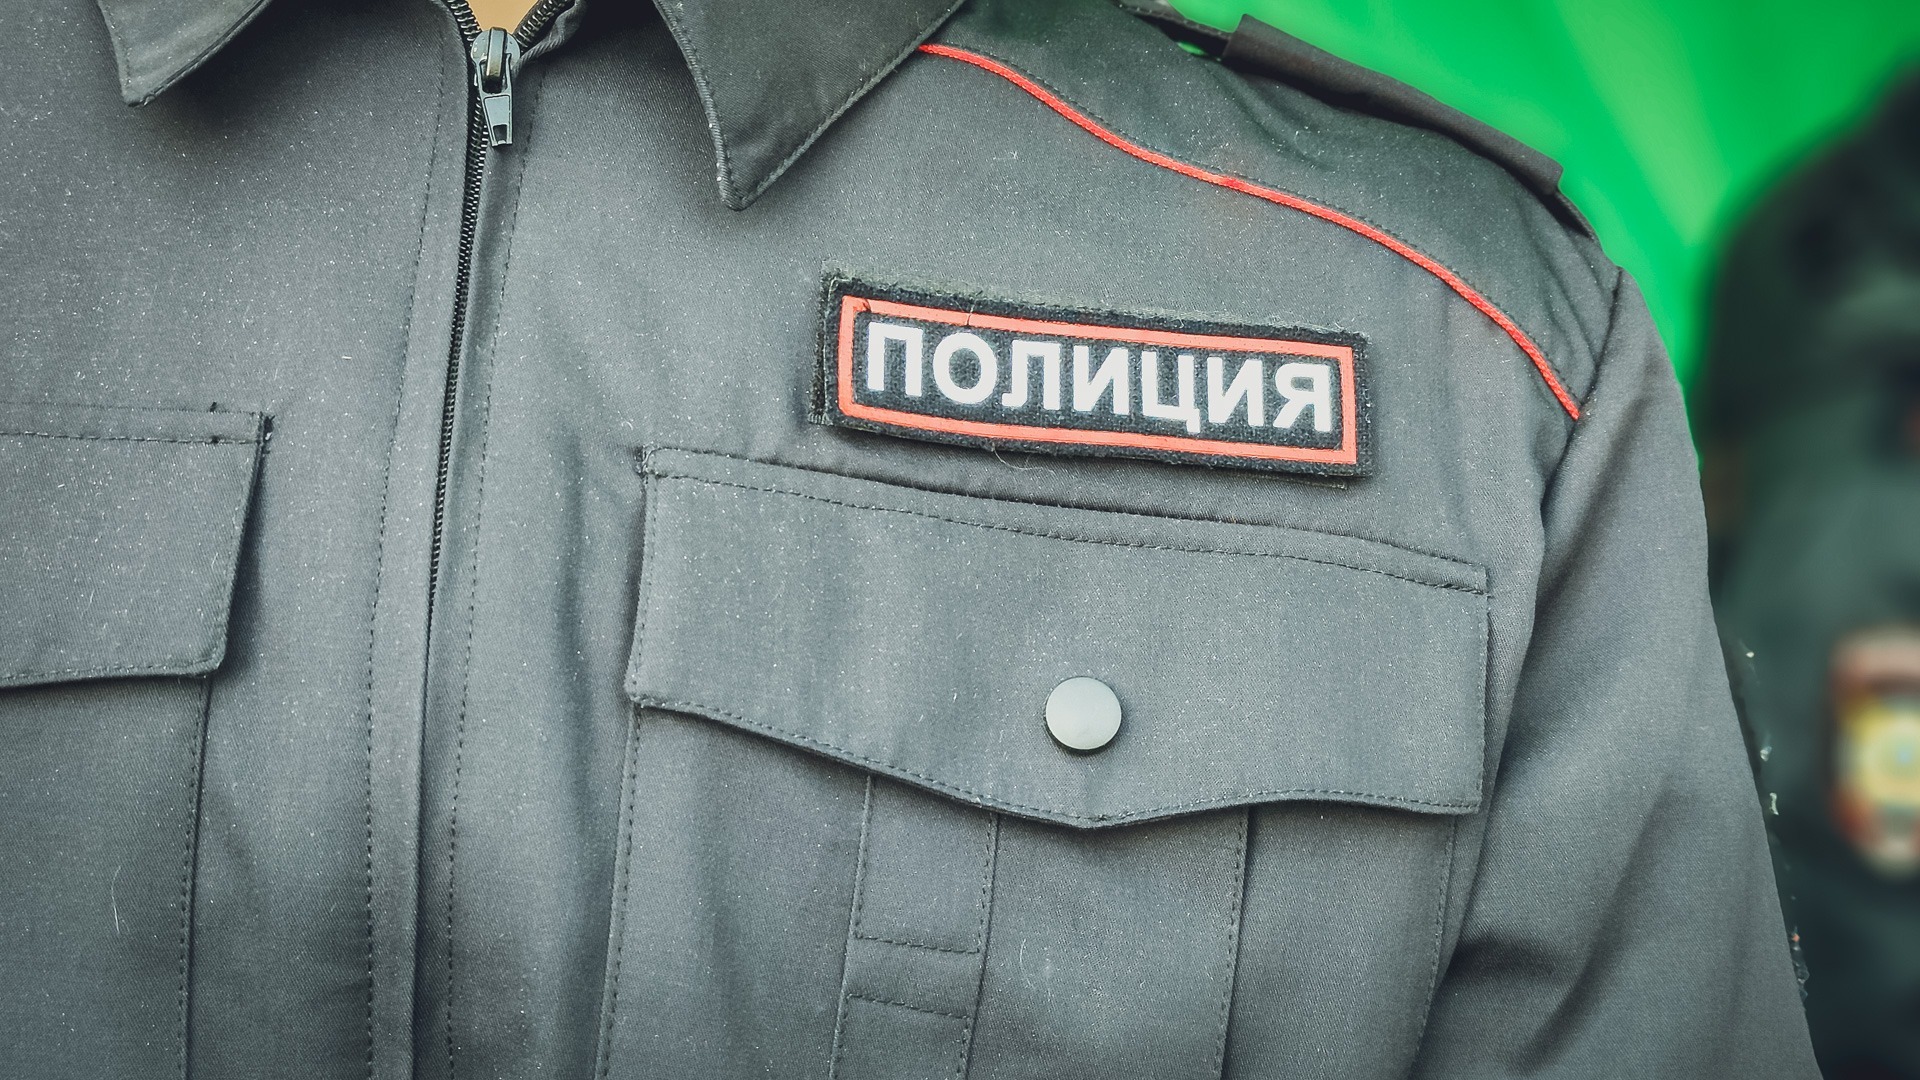 В Красноярском крае ищут мужчину, который взял школьницу на руки и начал трогать